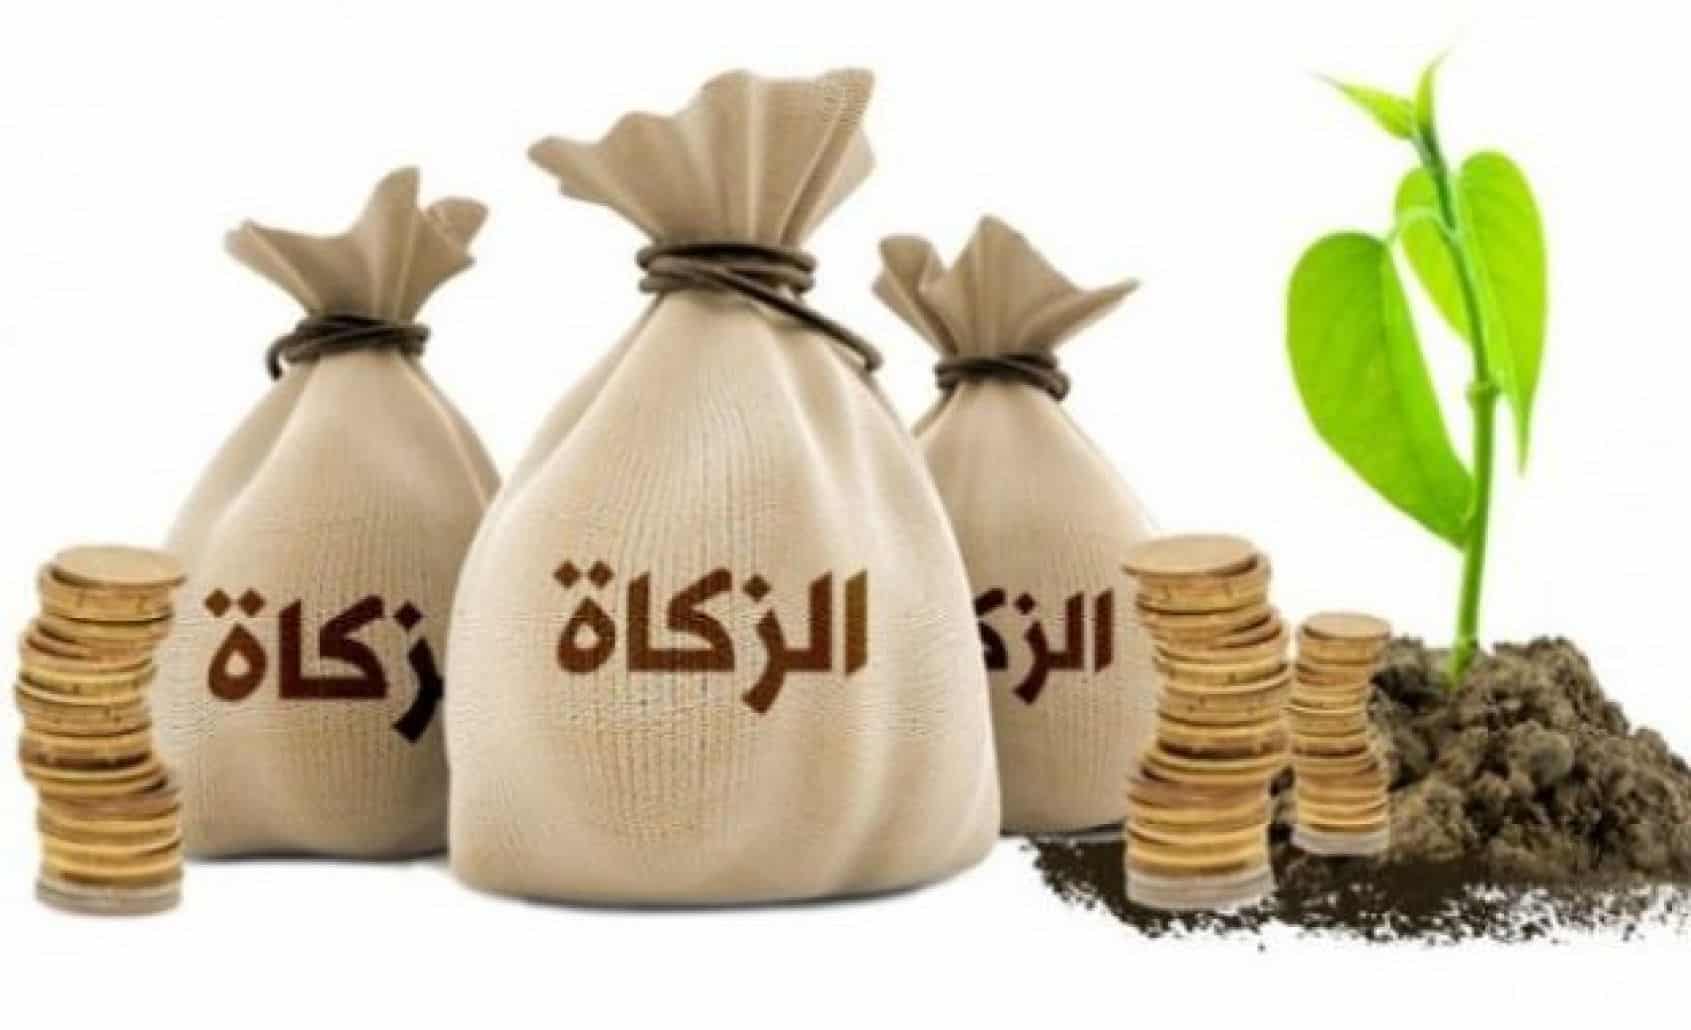 زكاة الفطر خلال شهر رمضان وقيمتها ووقت إخراجها وعلى من تجب 2 22/4/2021 - 2:58 ص